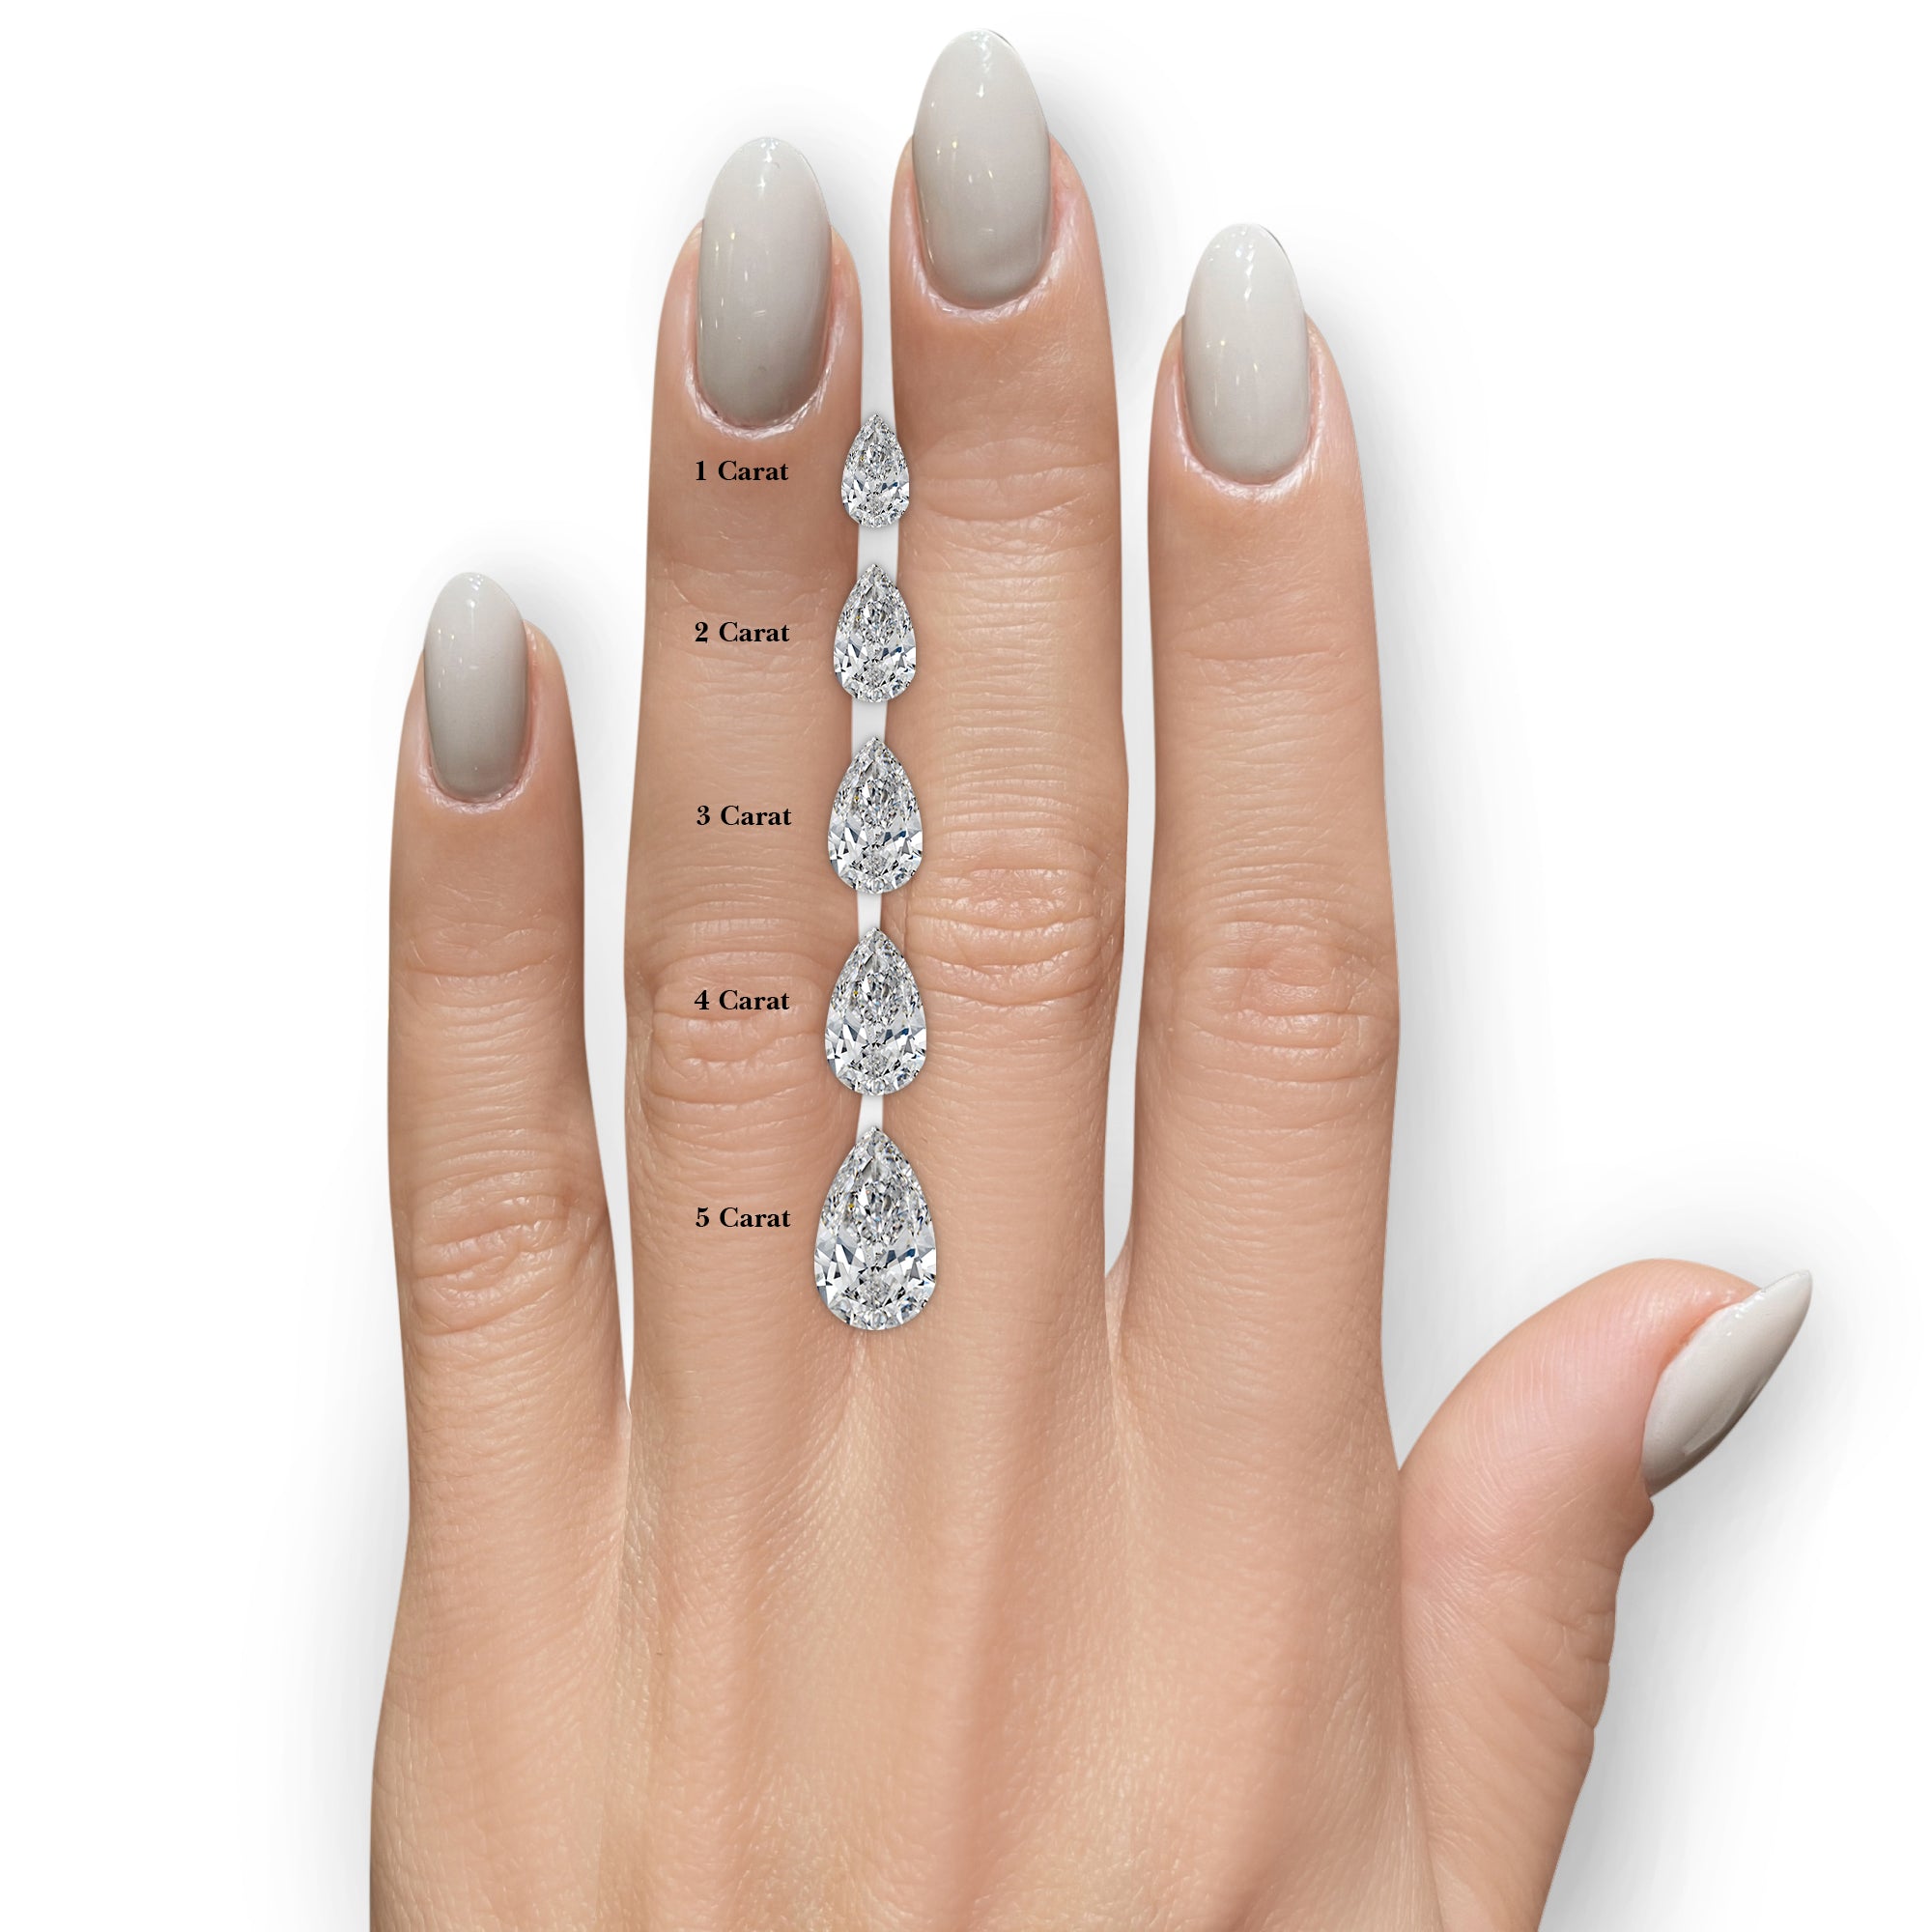 Sabrina Lab Grown Diamond Ring -18K White Gold